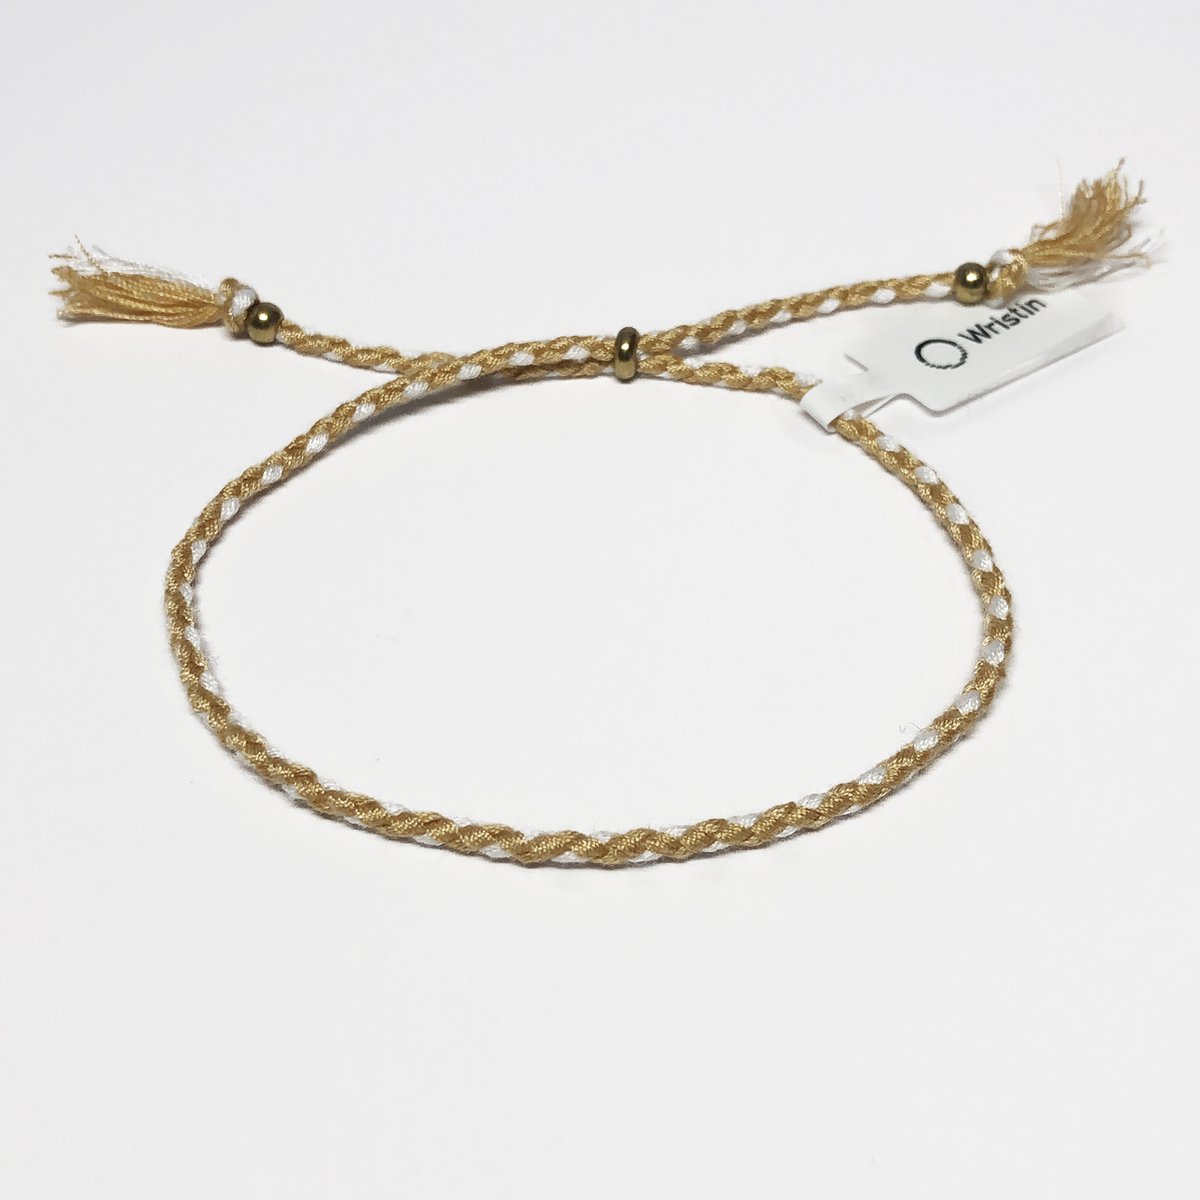 Wristin - Tibetaanse armband gevlochten bruin/wit